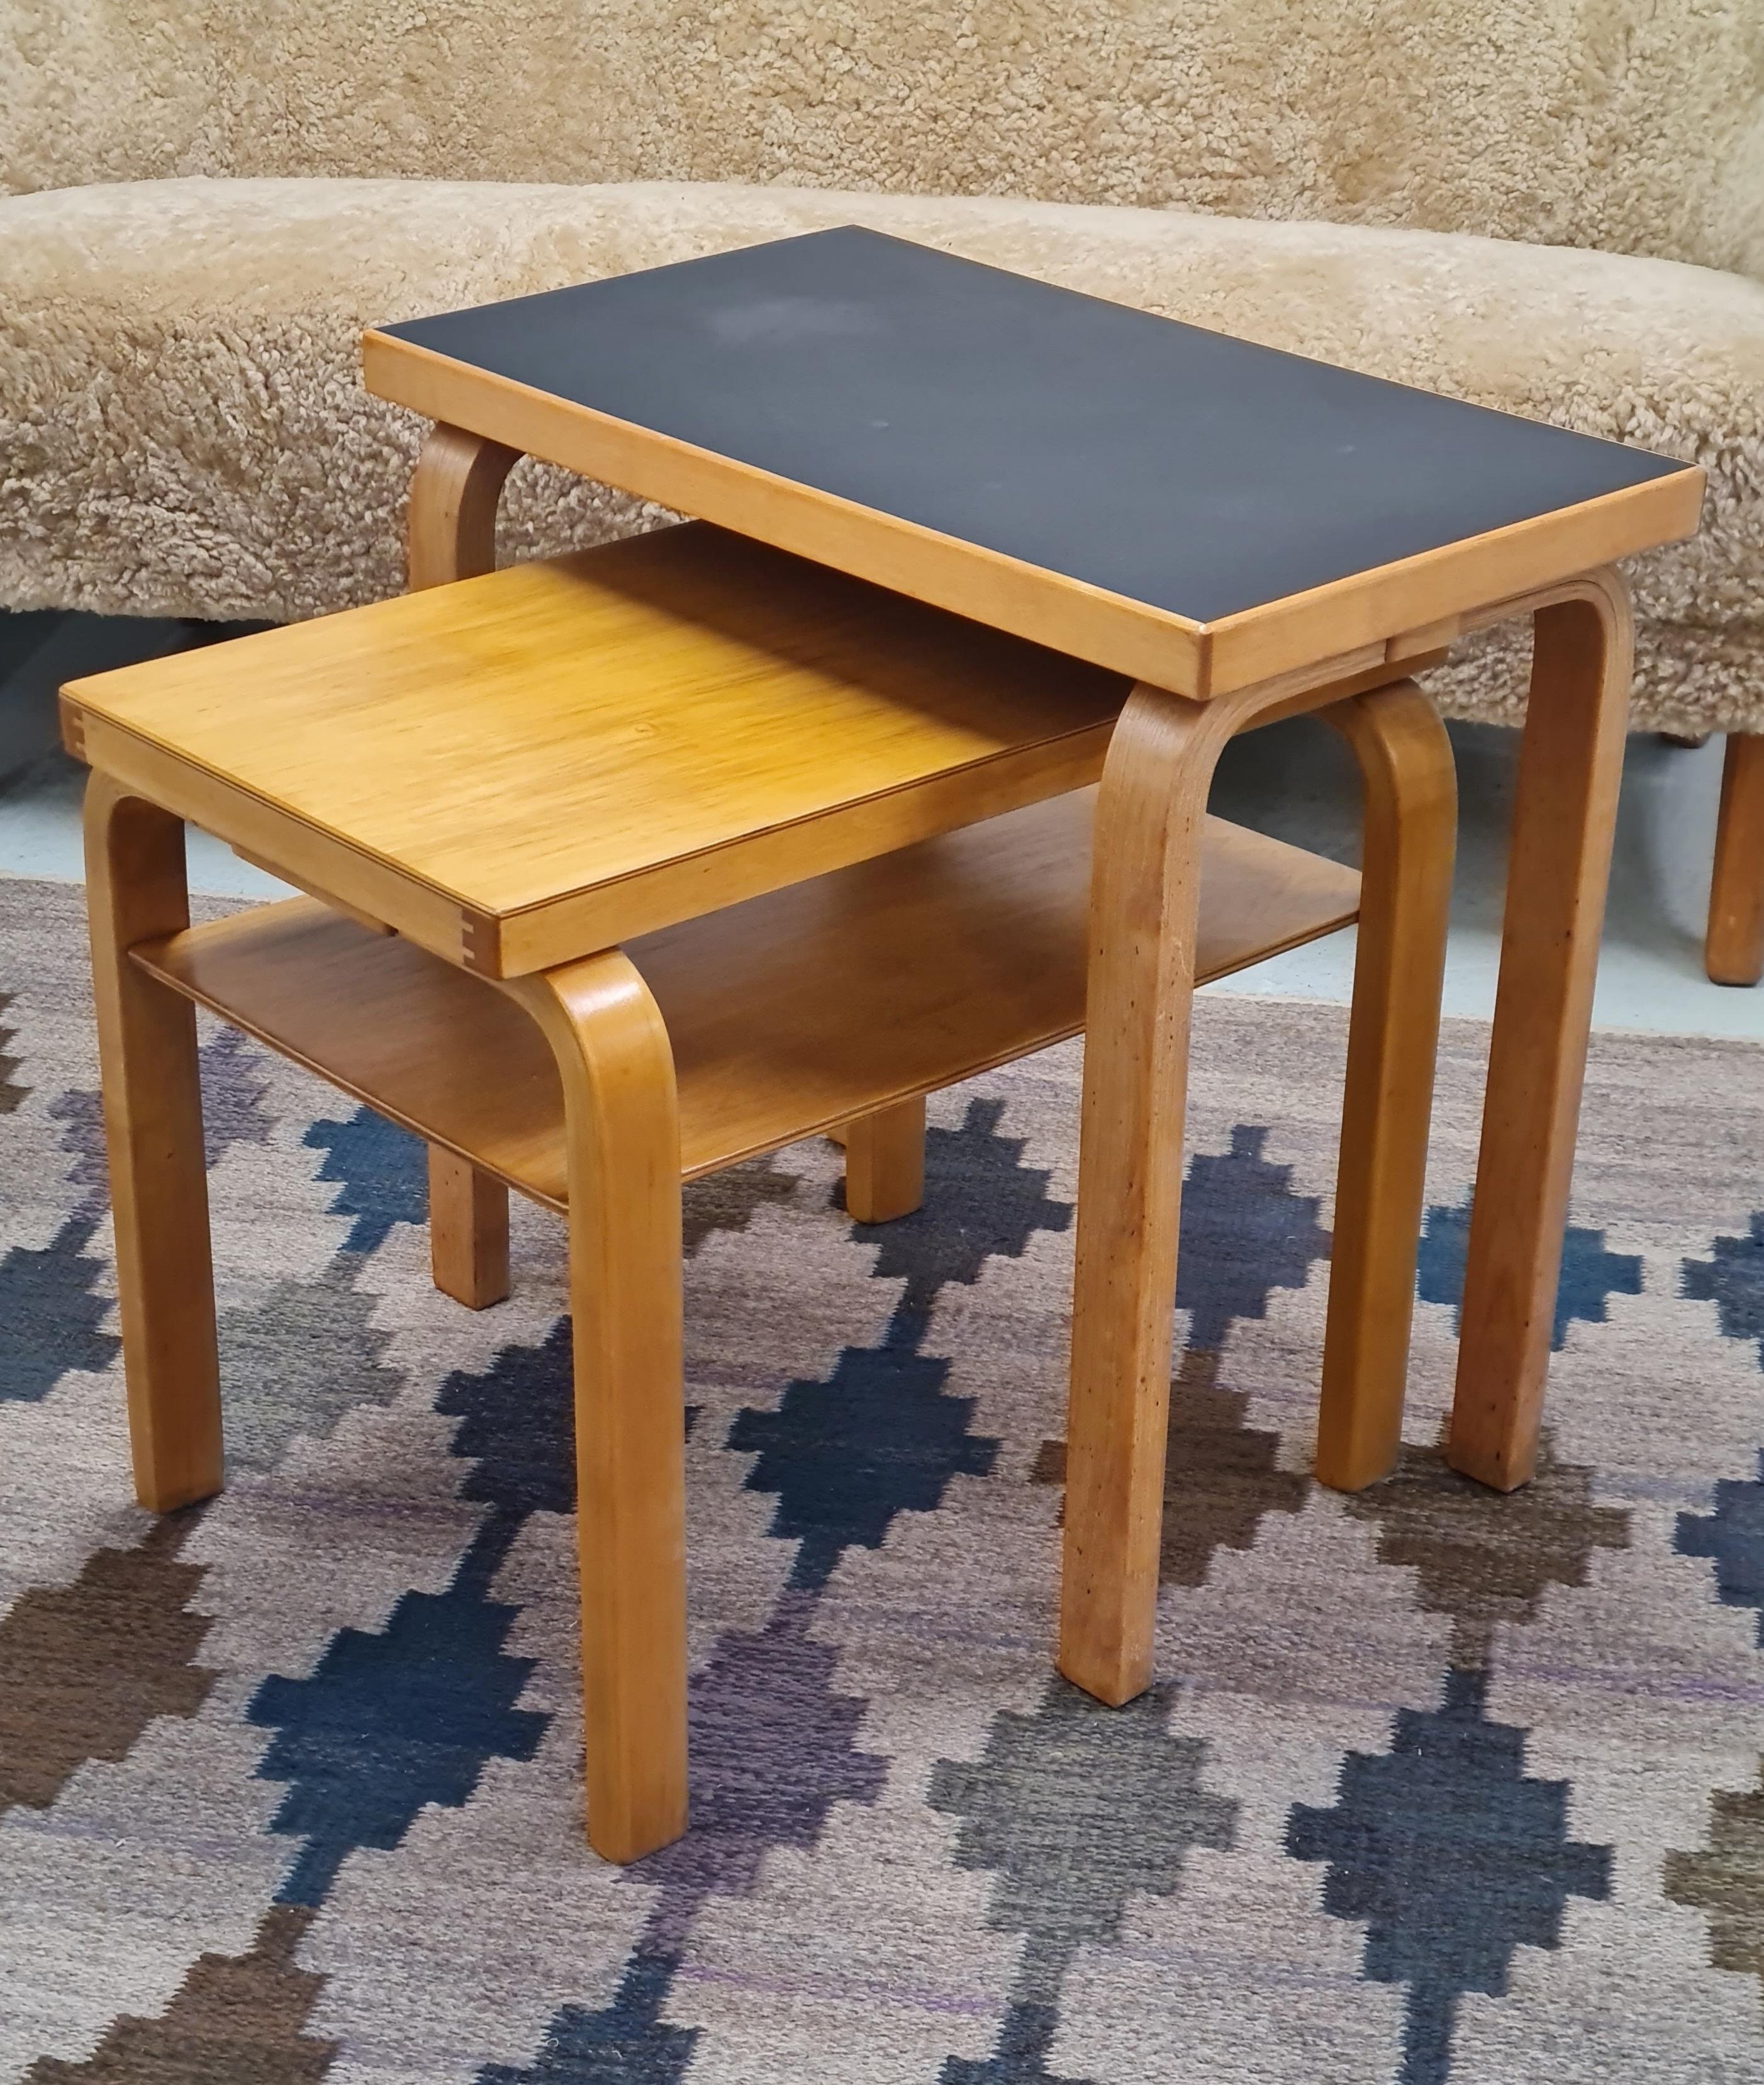 Alvar aalto Side Table Model 86 for Artek, 1930s For Sale 2